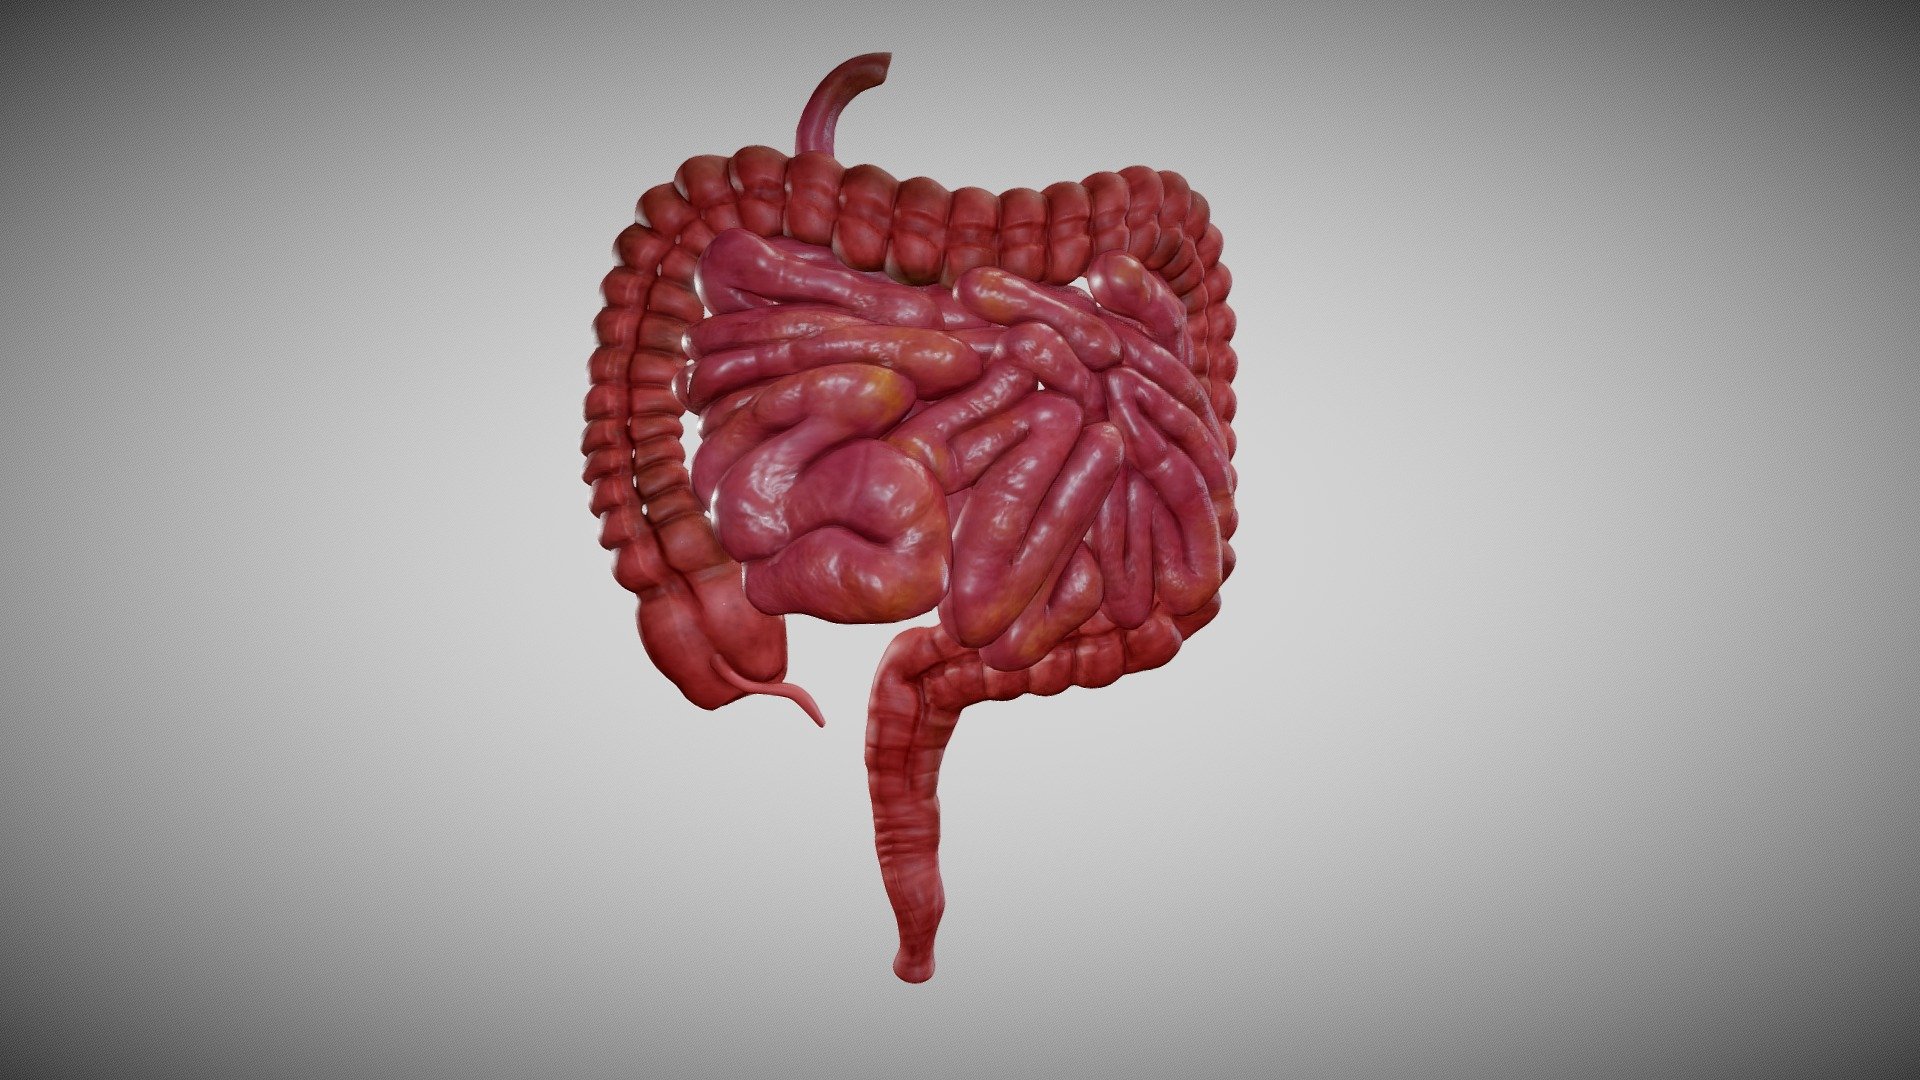 Descubra o tamanho do intestino humano e sua relação com o peso